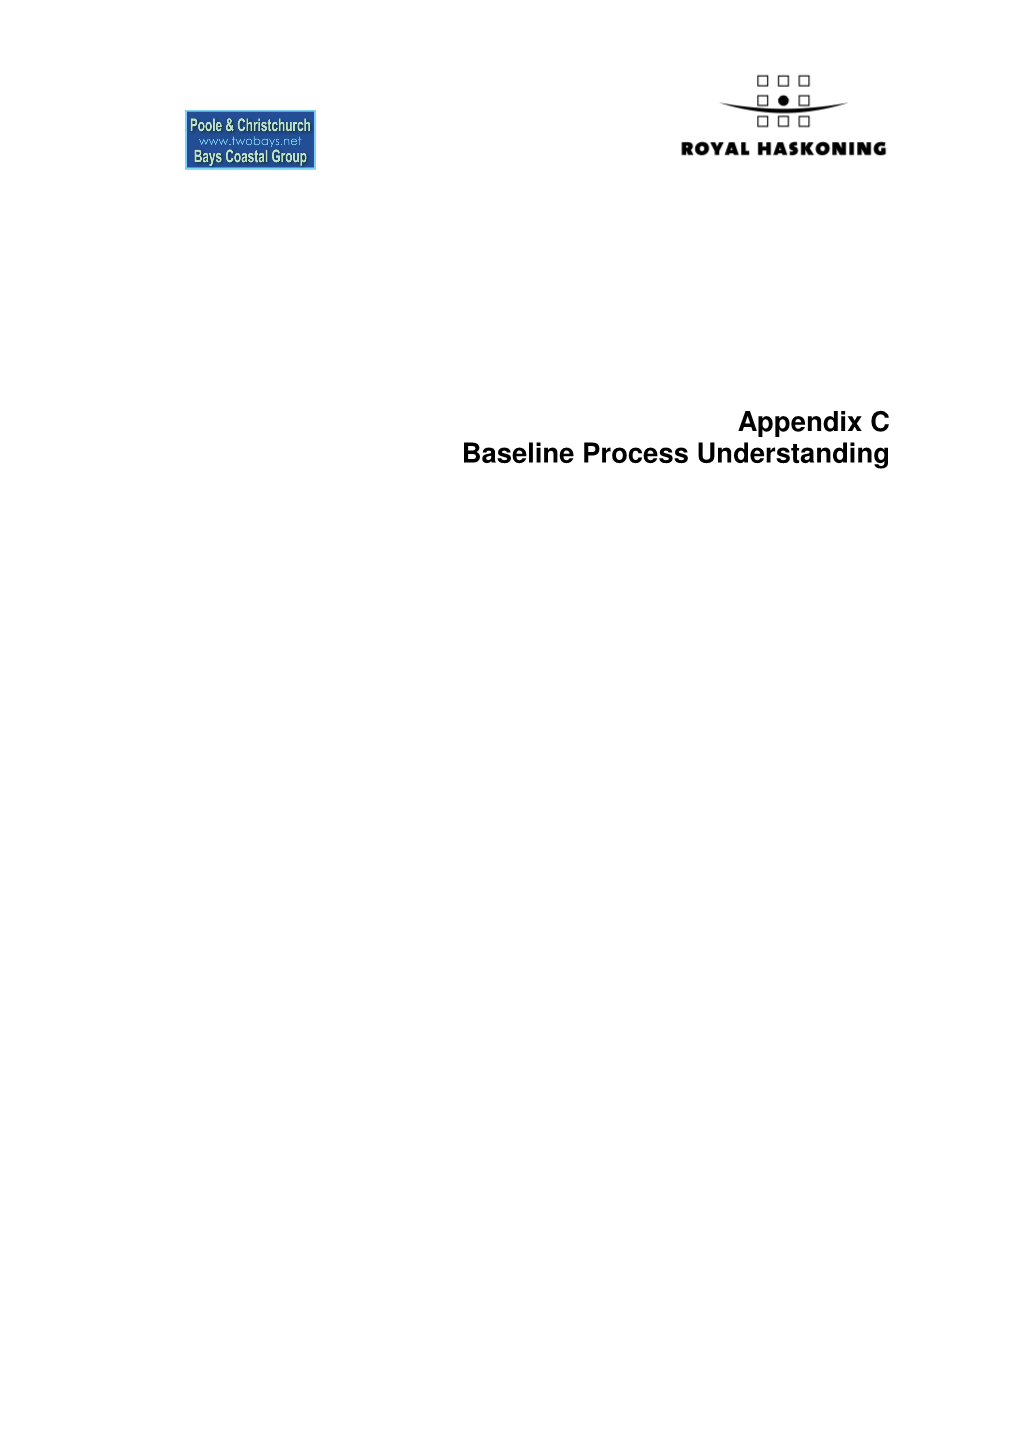 Appendix C Baseline Process Understanding